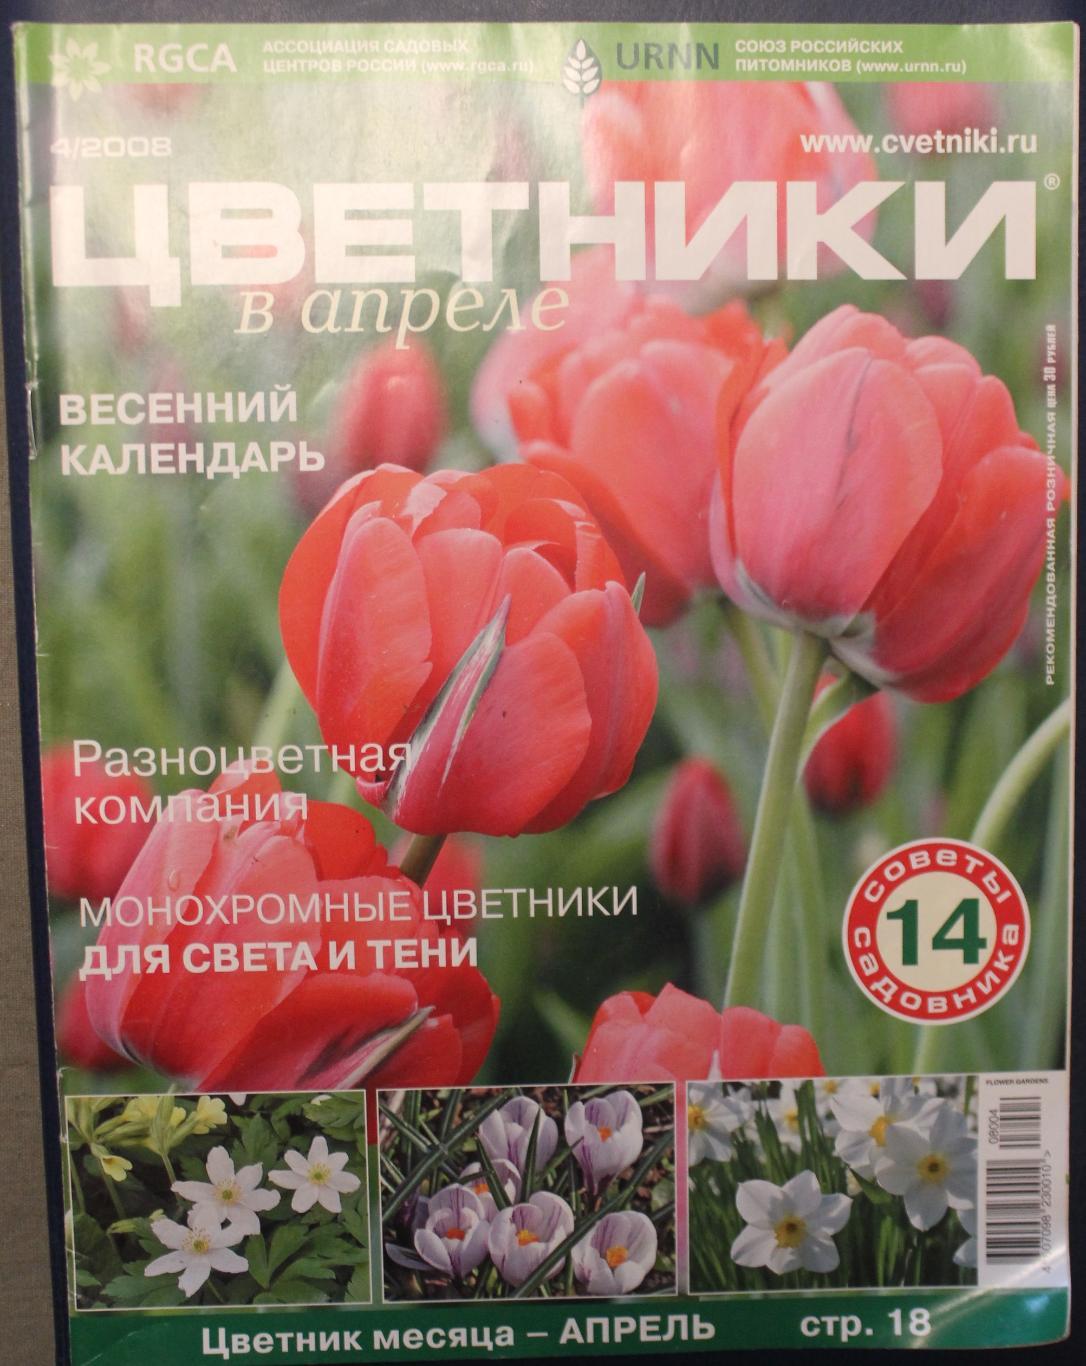 Журнал Цветники № 4 2002